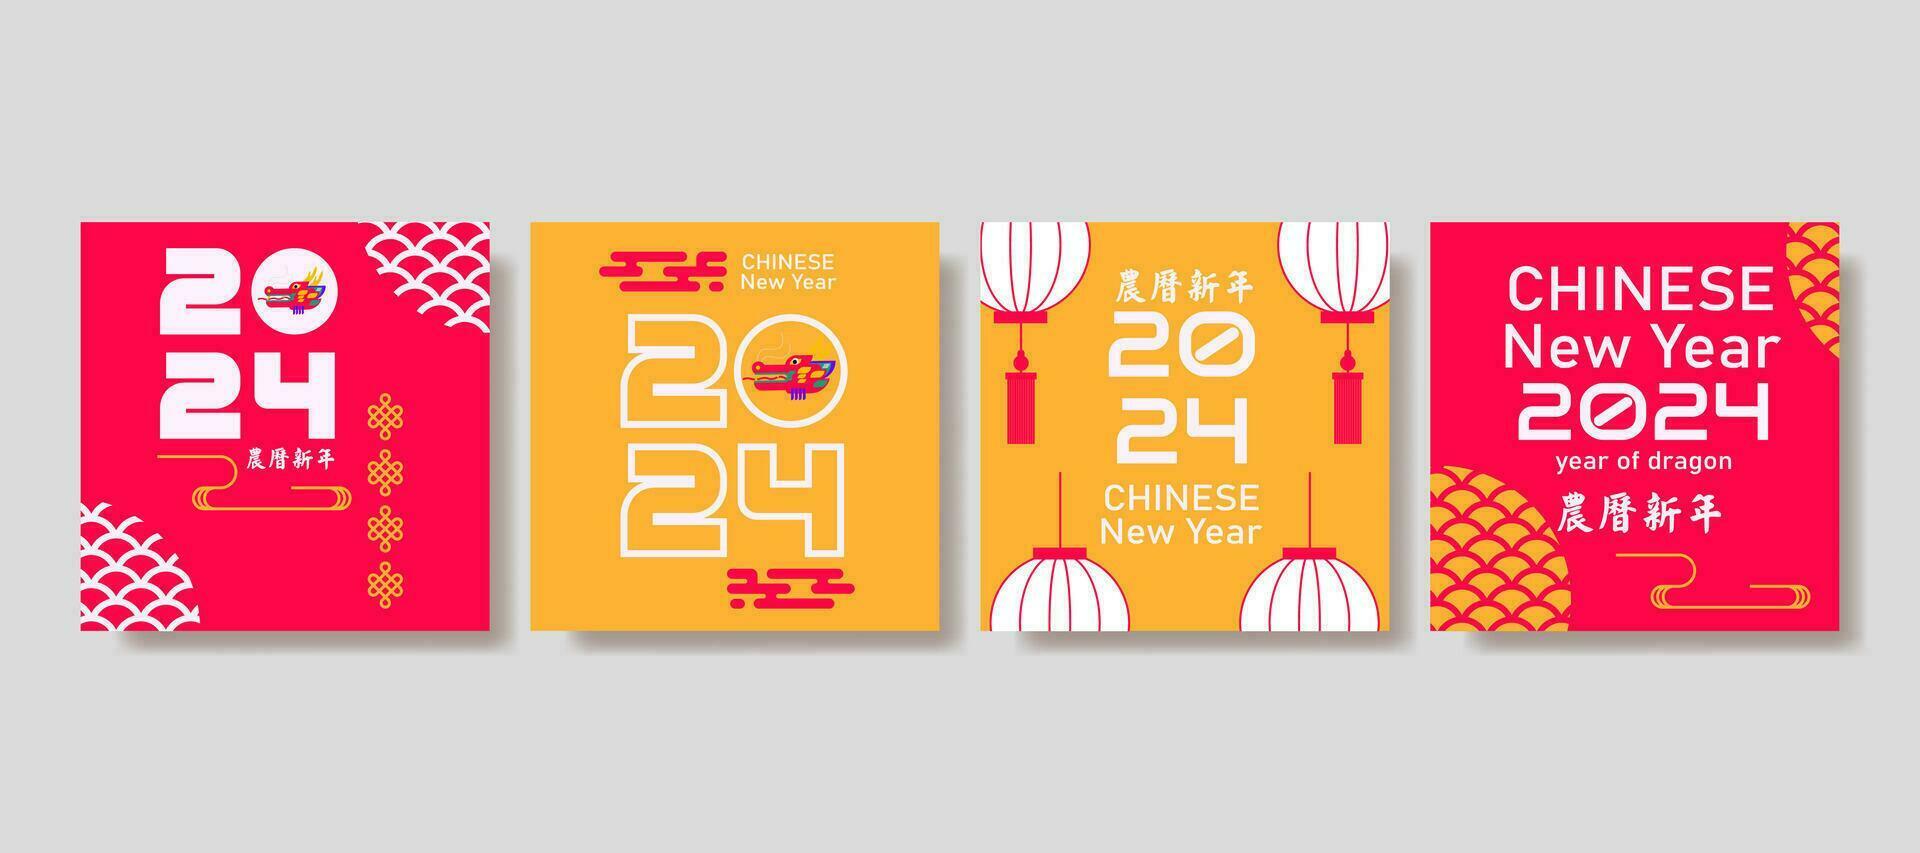 moderno Arte chino nuevo año 2024 diseño conjunto en rojo, amarillo y blanco colores para social medios de comunicación correo, cubrir, tarjeta, póster, bandera vector